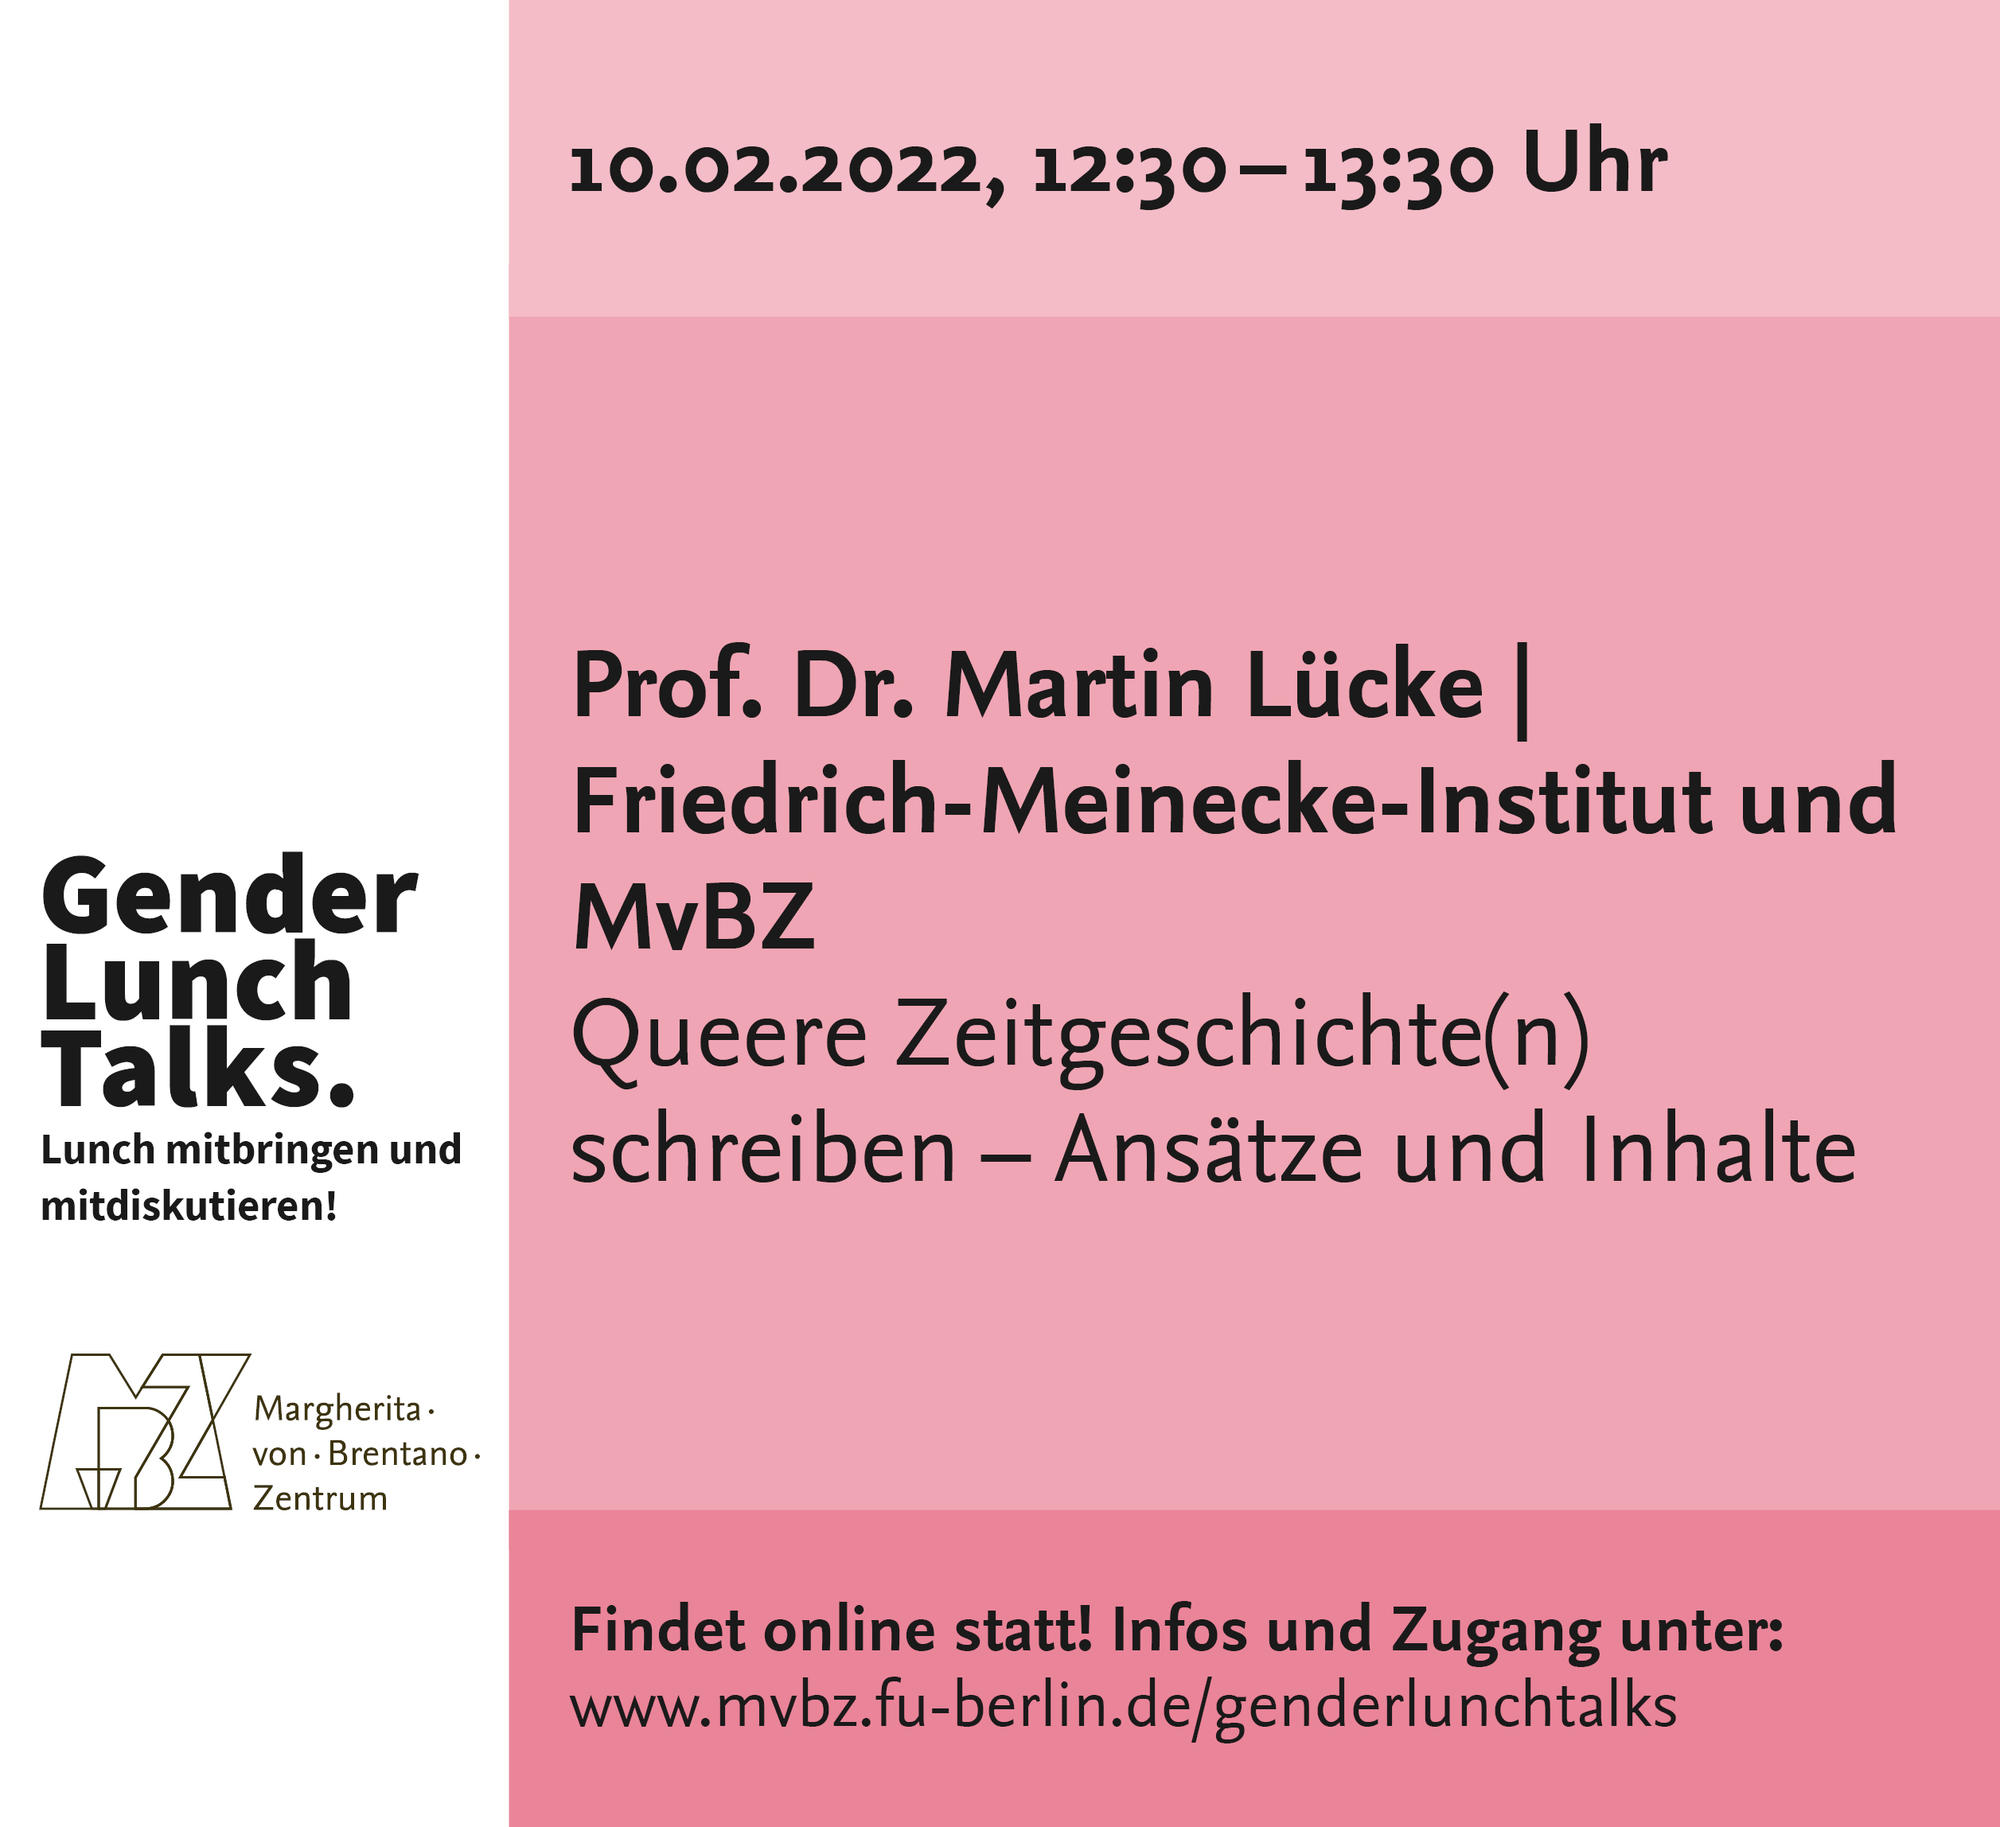 Gender Lunch Talk, 10.02.2022